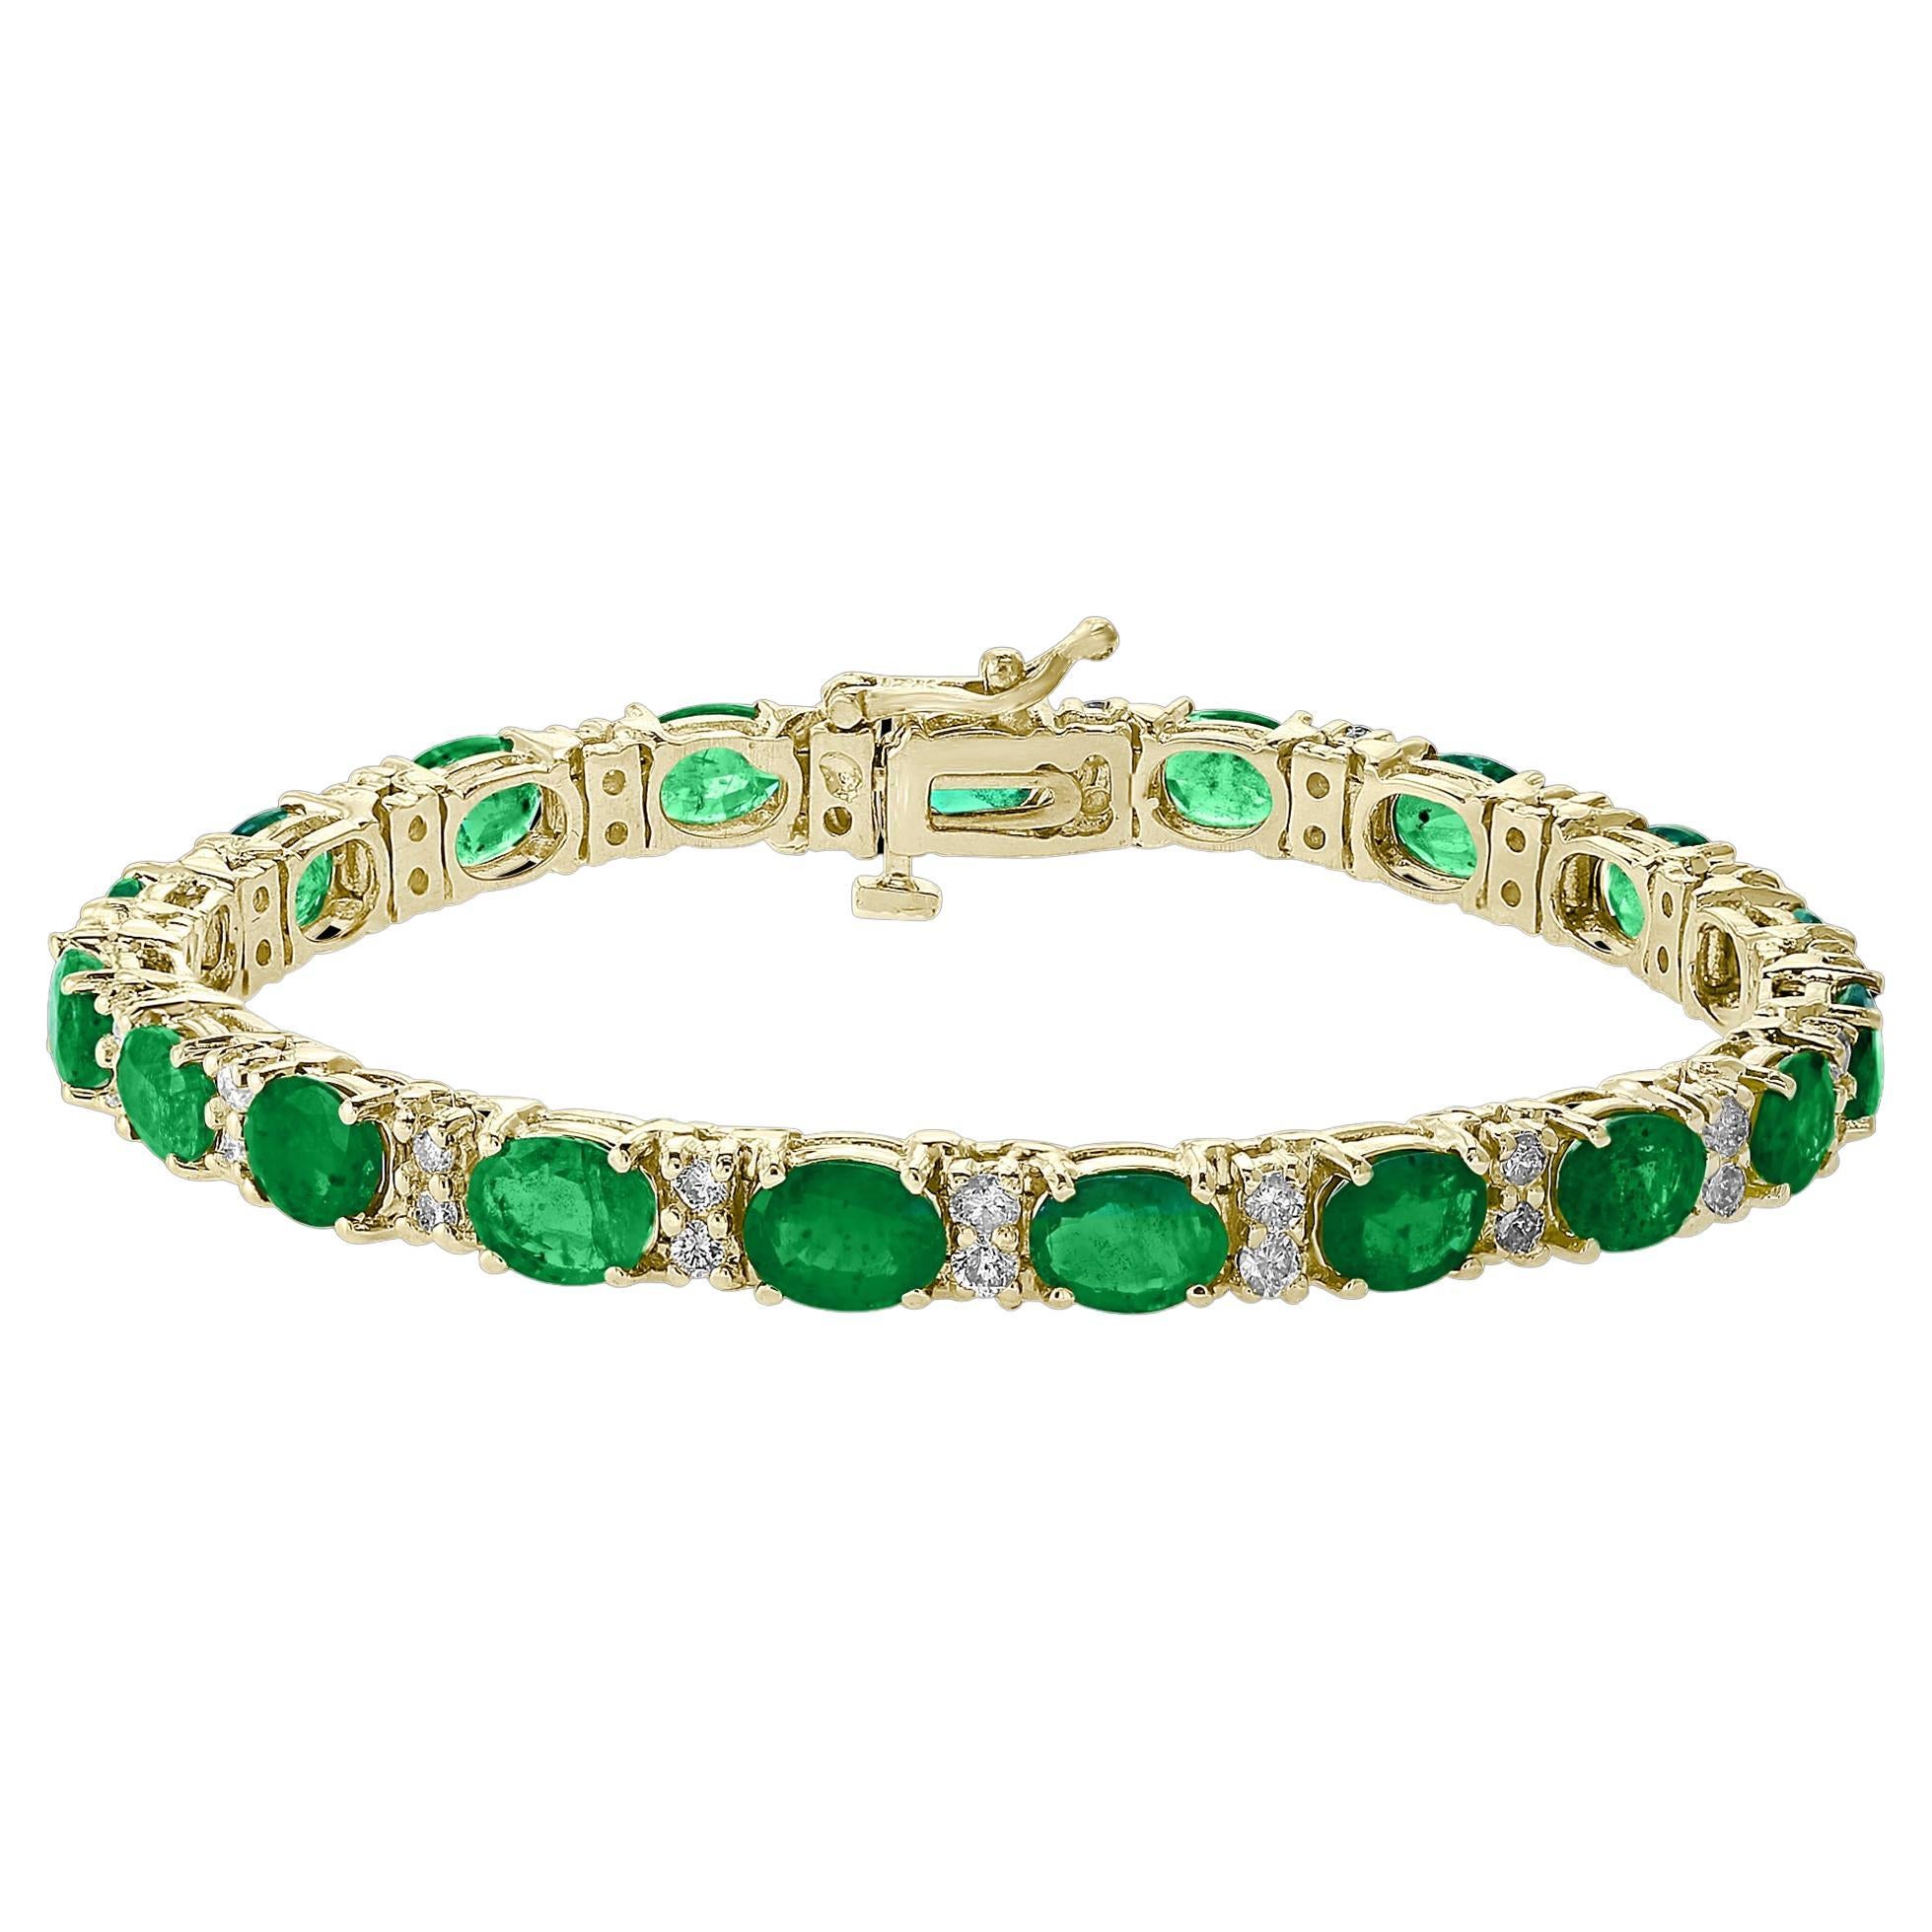 13 Carat Natural Emerald & Diamond Cocktail Tennis Bracelet 14 Karat Yellow Gold